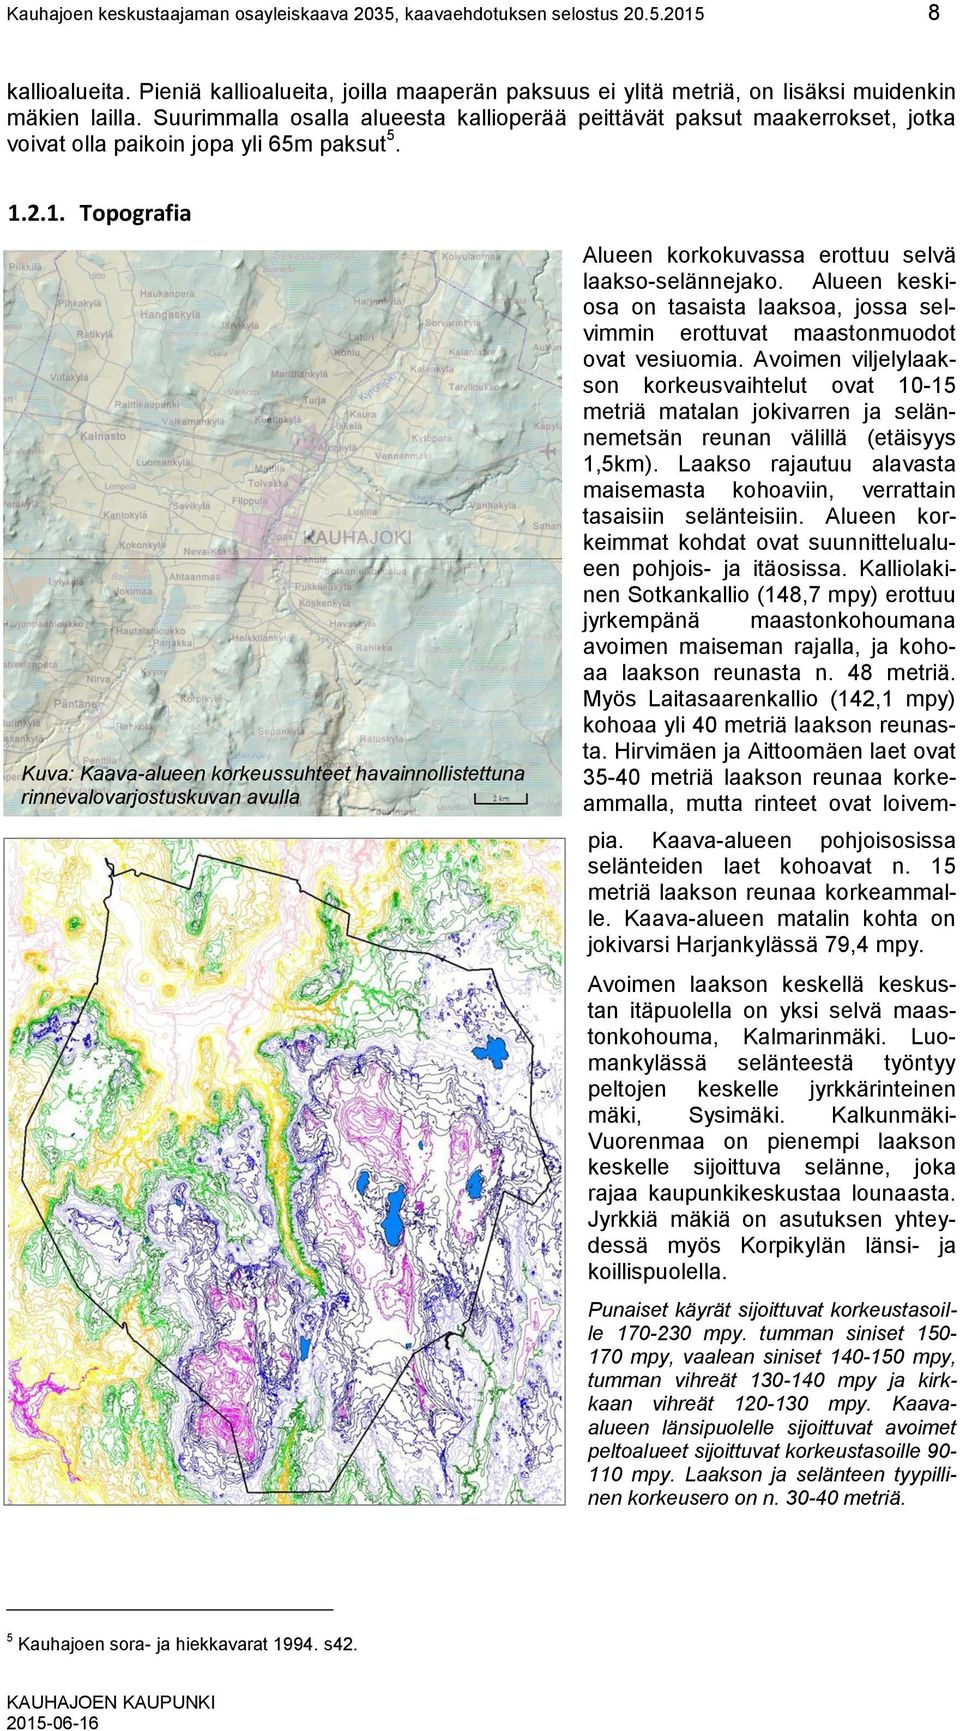 2.1. Topografia Kuva: Kaava-alueen korkeussuhteet havainnollistettuna rinnevalovarjostuskuvan avulla Alueen korkokuvassa erottuu selvä laakso-selännejako.